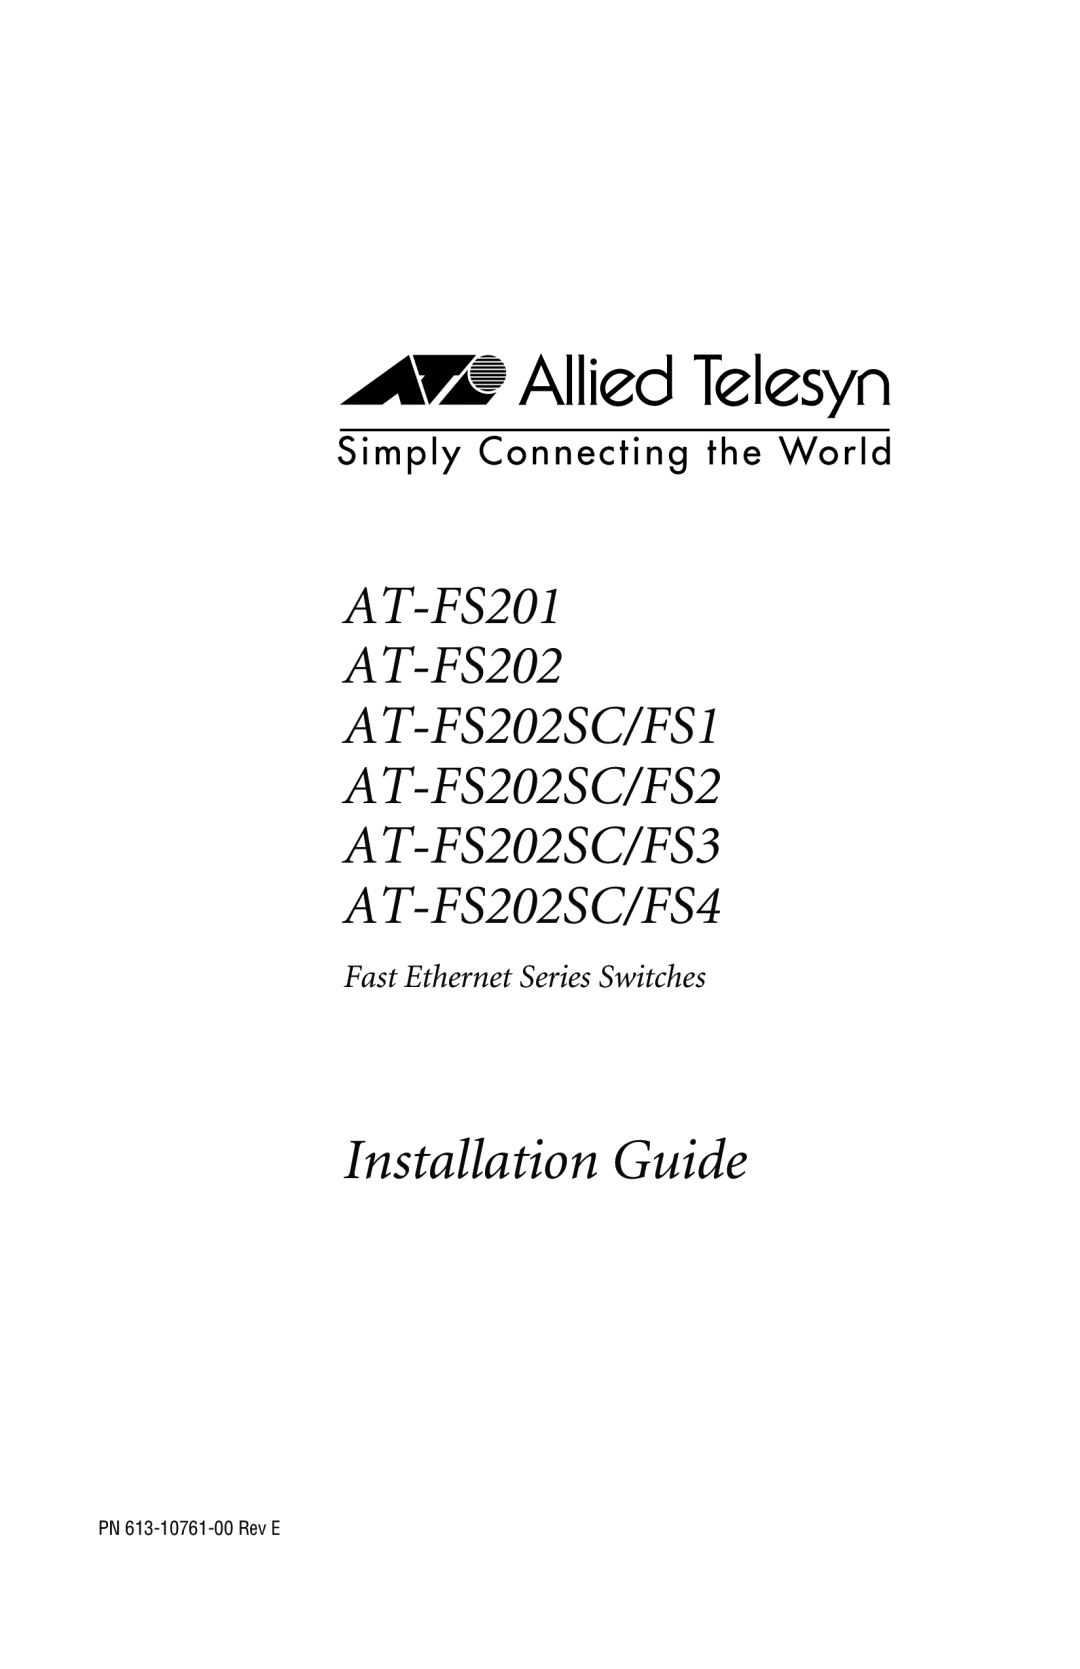 IBM AT-FS202SC/FS4 manual Installation Guide, AT-FS201 AT-FS202 AT-FS202SC/FS1 AT-FS202SC/FS2 AT-FS202SC/FS3 